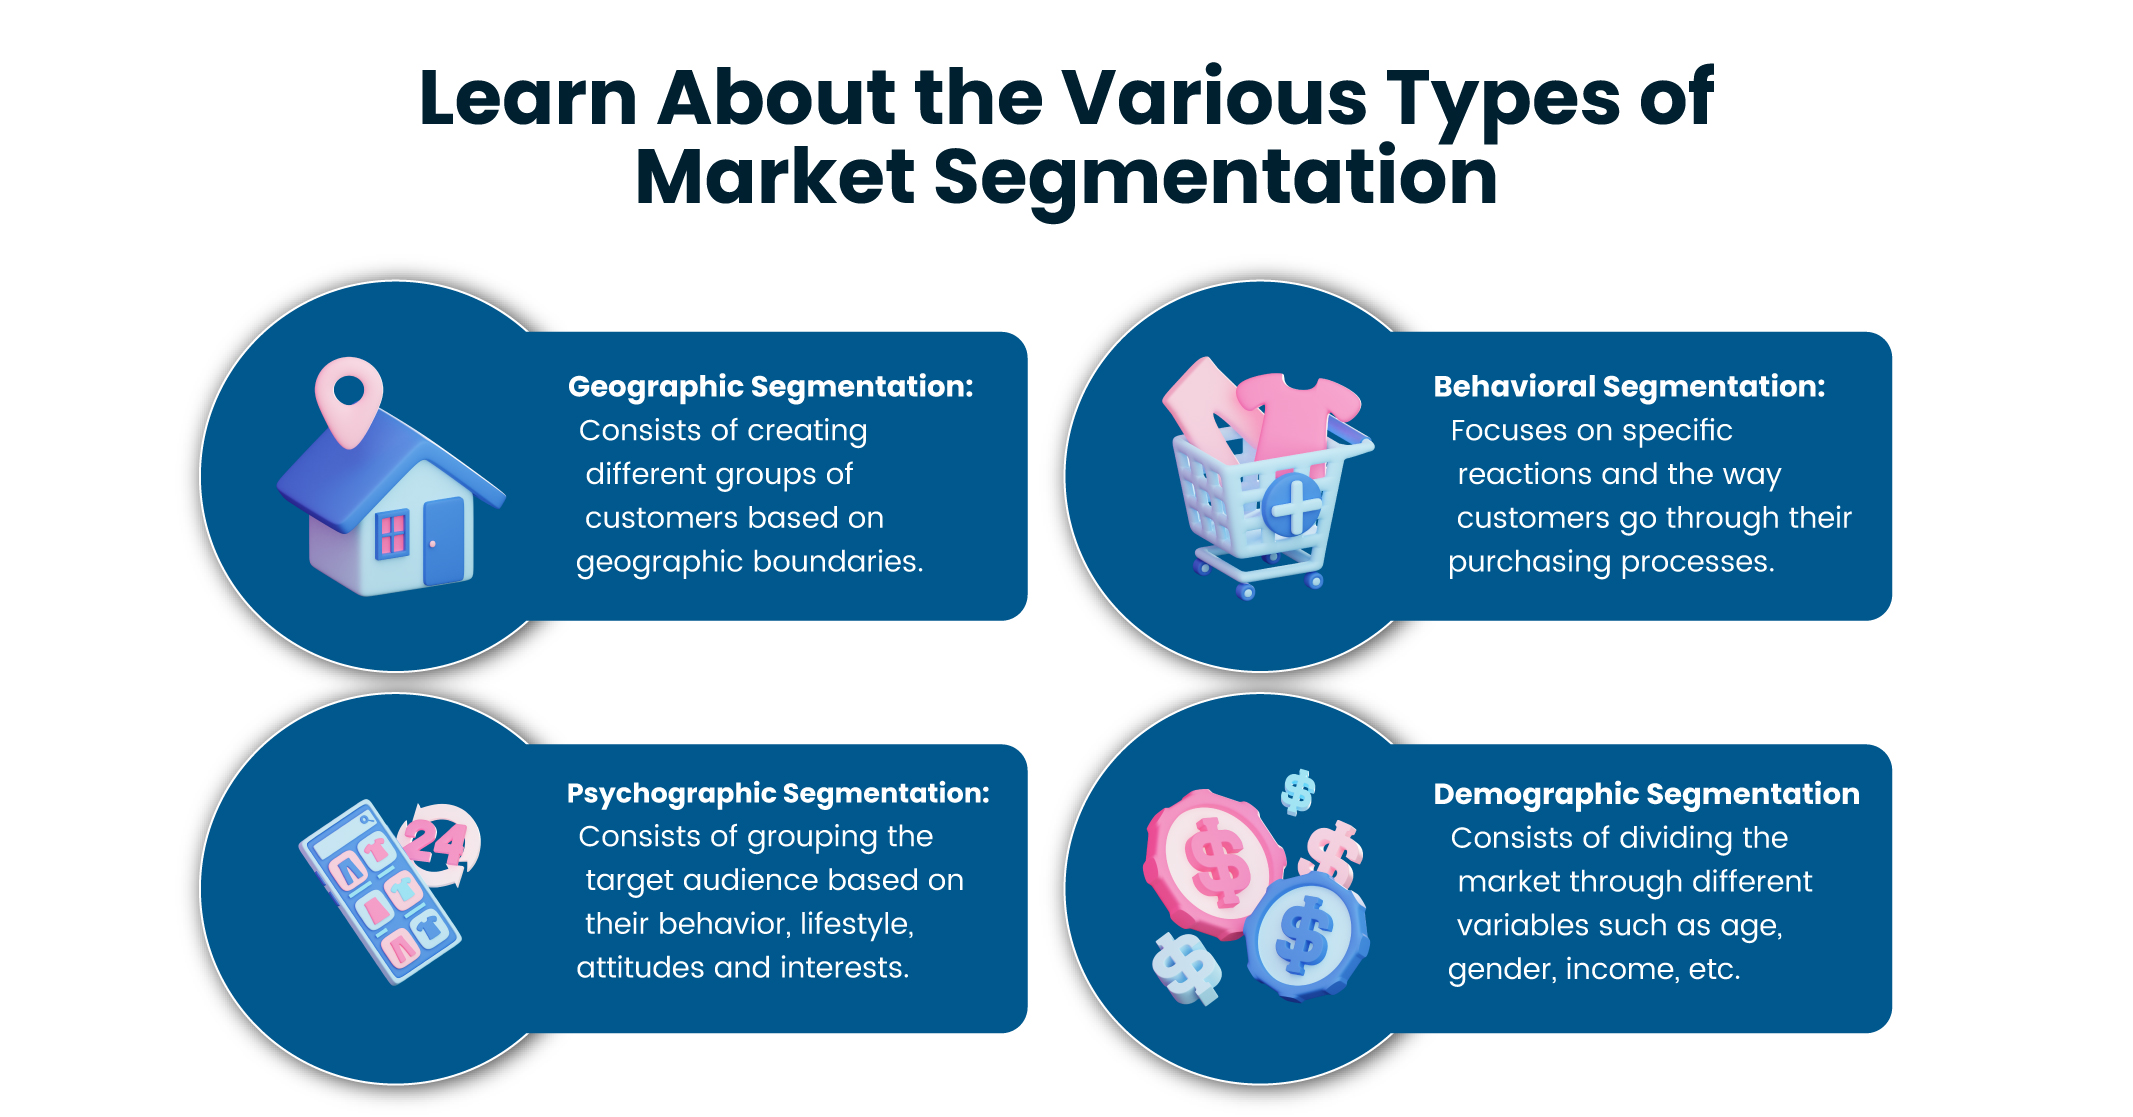 target audience segmentation